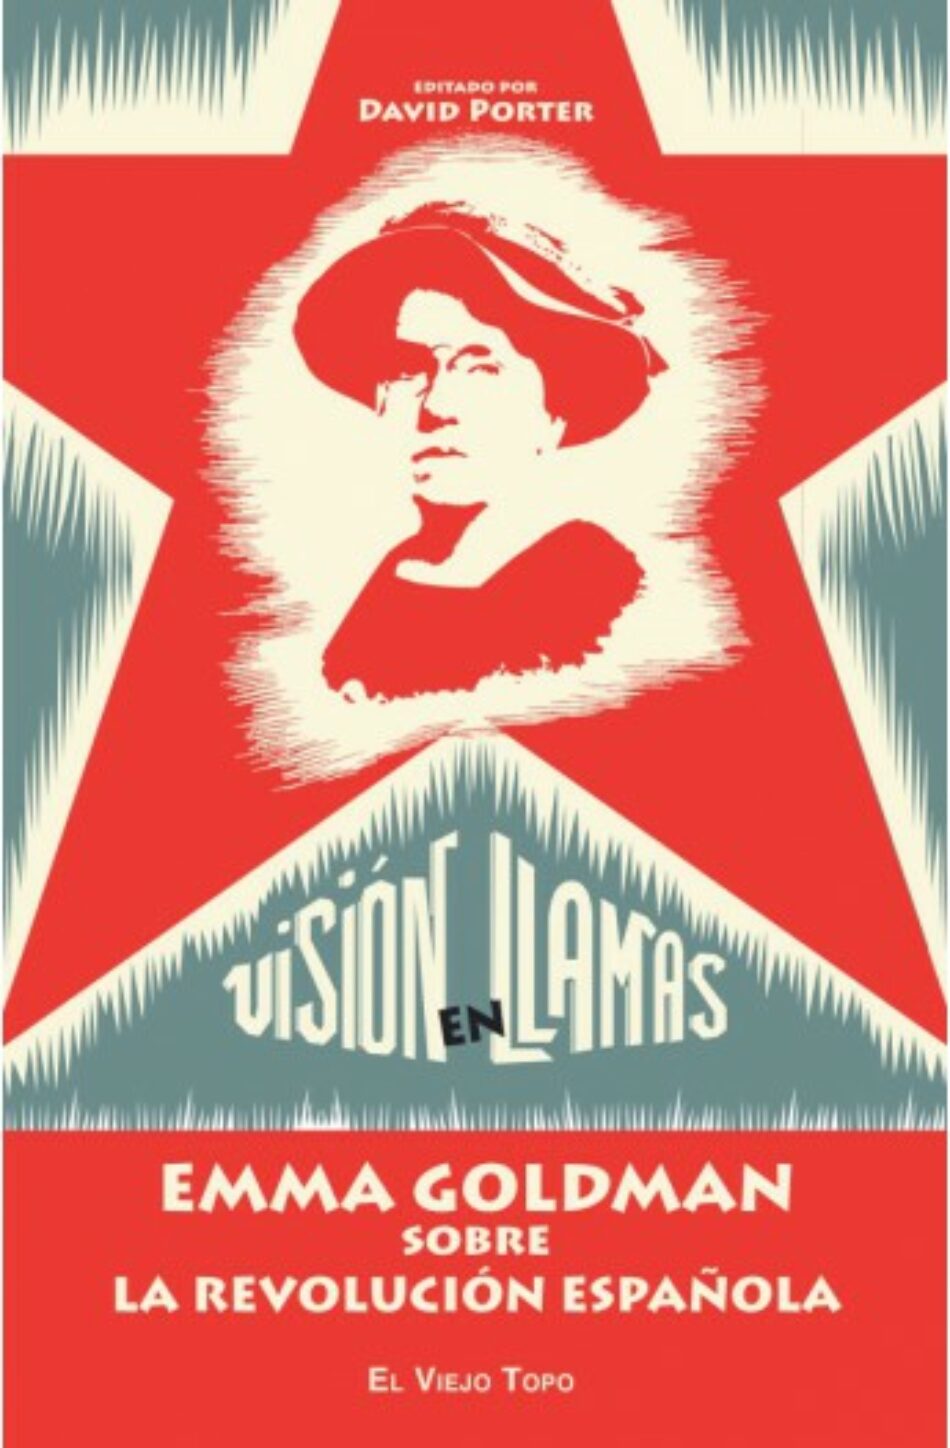 Visión en llamas. Emma Goldman sobre la Revolución española, de David Poter